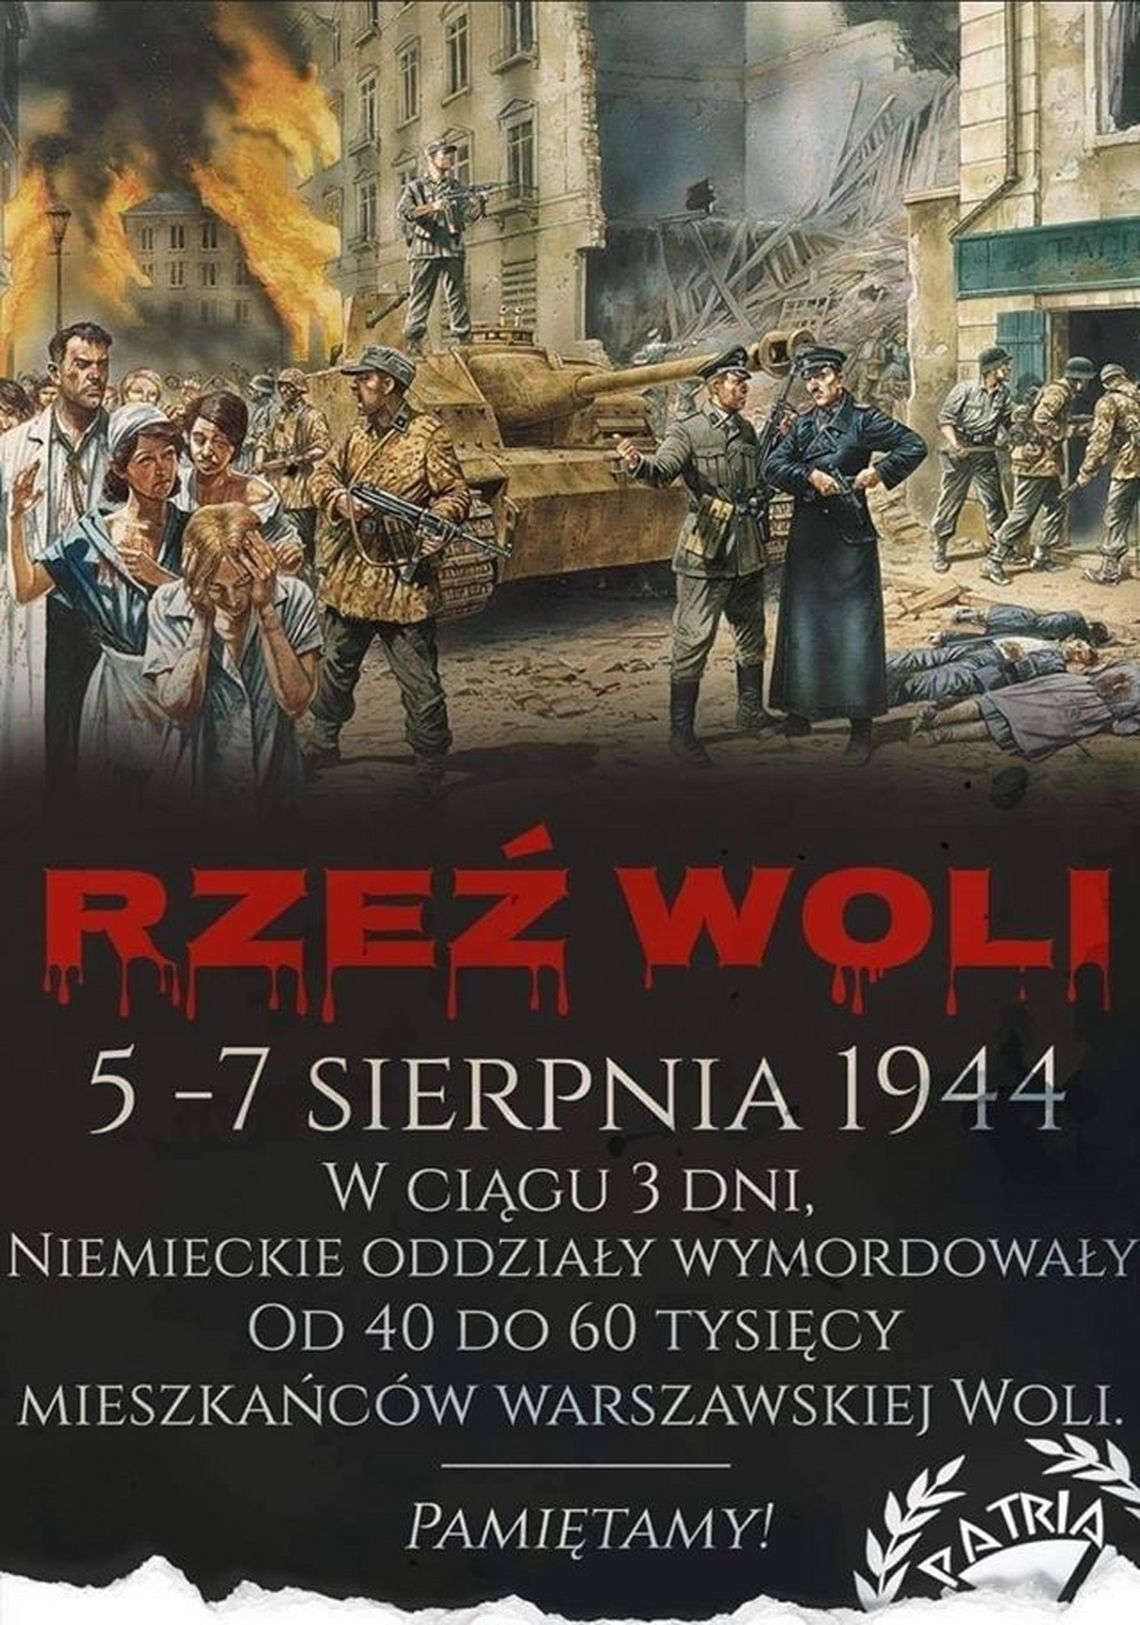 Czarna sobota - rzeź dzielnicy Wola /5 sierpnia 1944